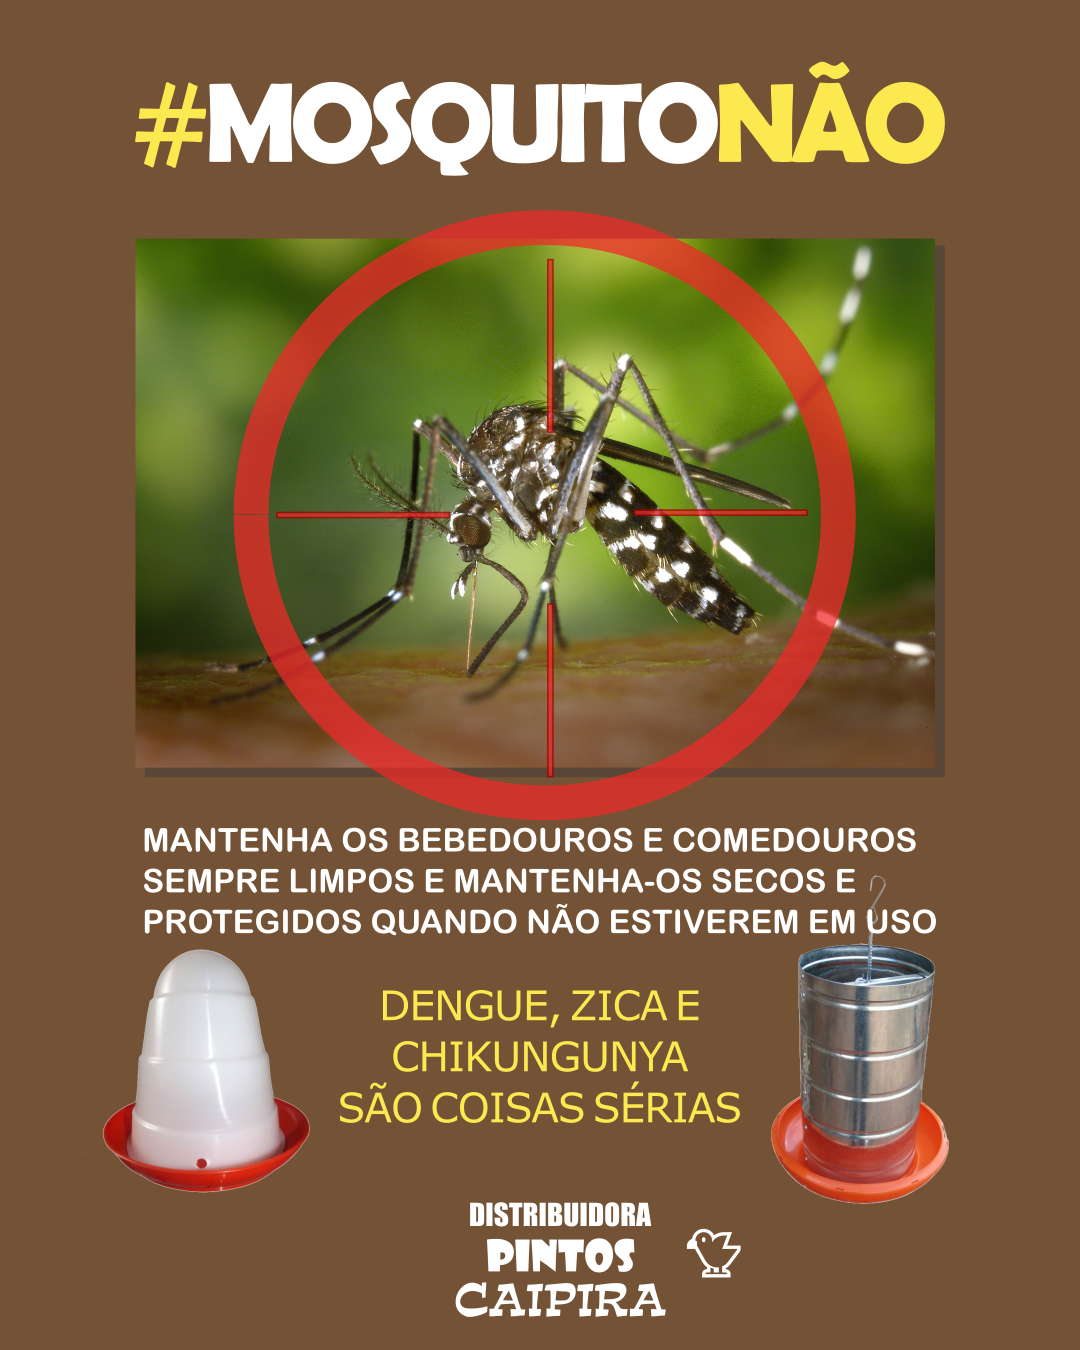 Imagem com um alvo apontando para um mosquito Aedes Aegipty